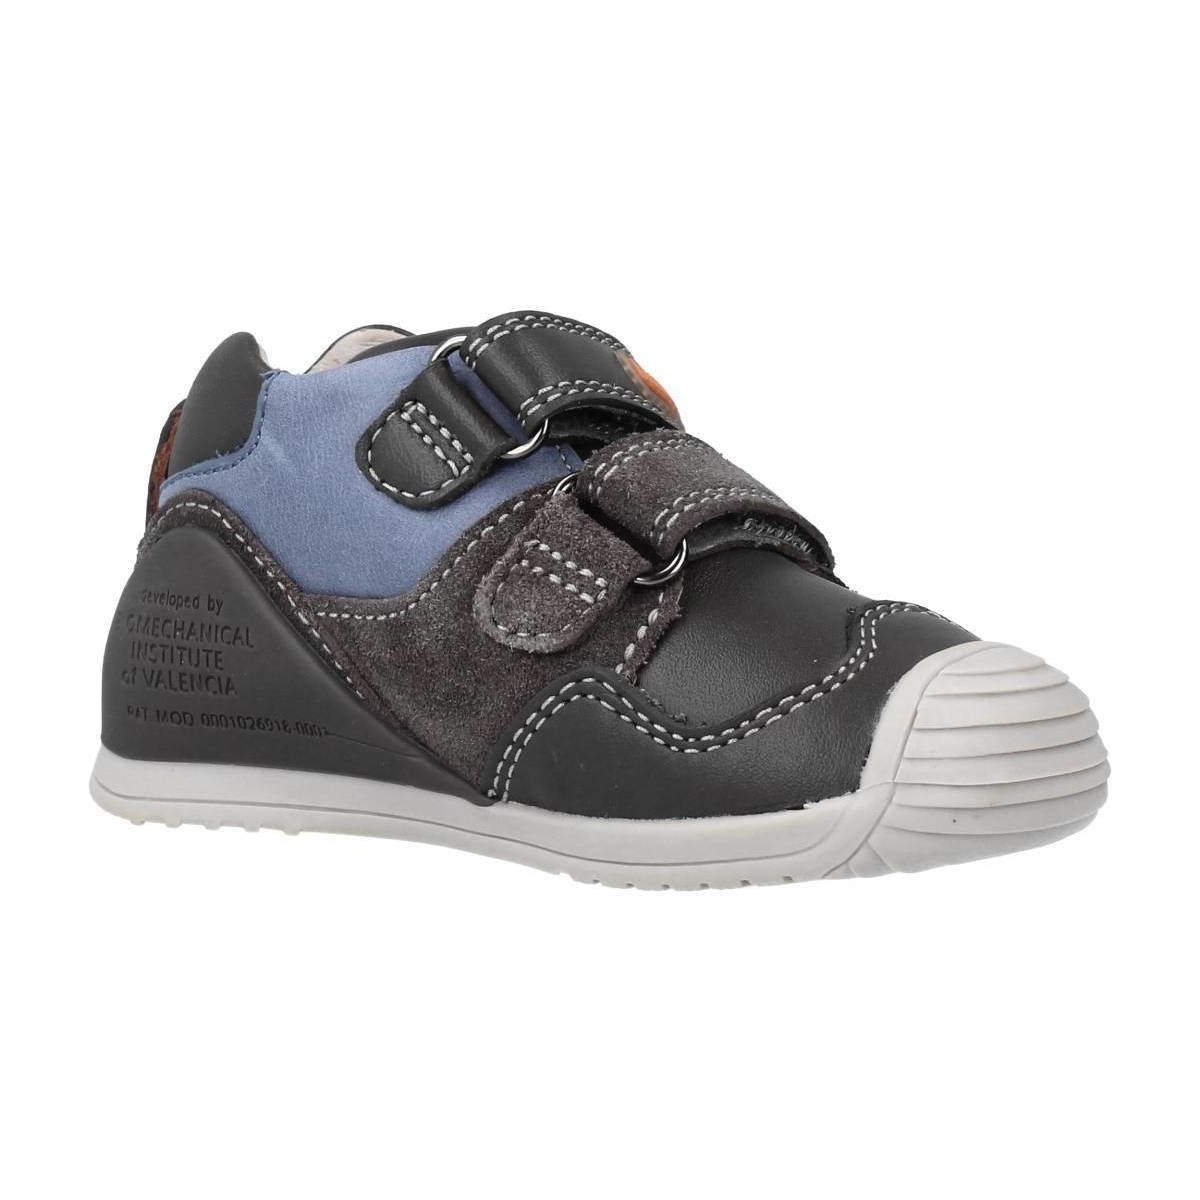 Schuhe Jungen Derby-Schuhe & Richelieu Biomecanics 211139 Grau